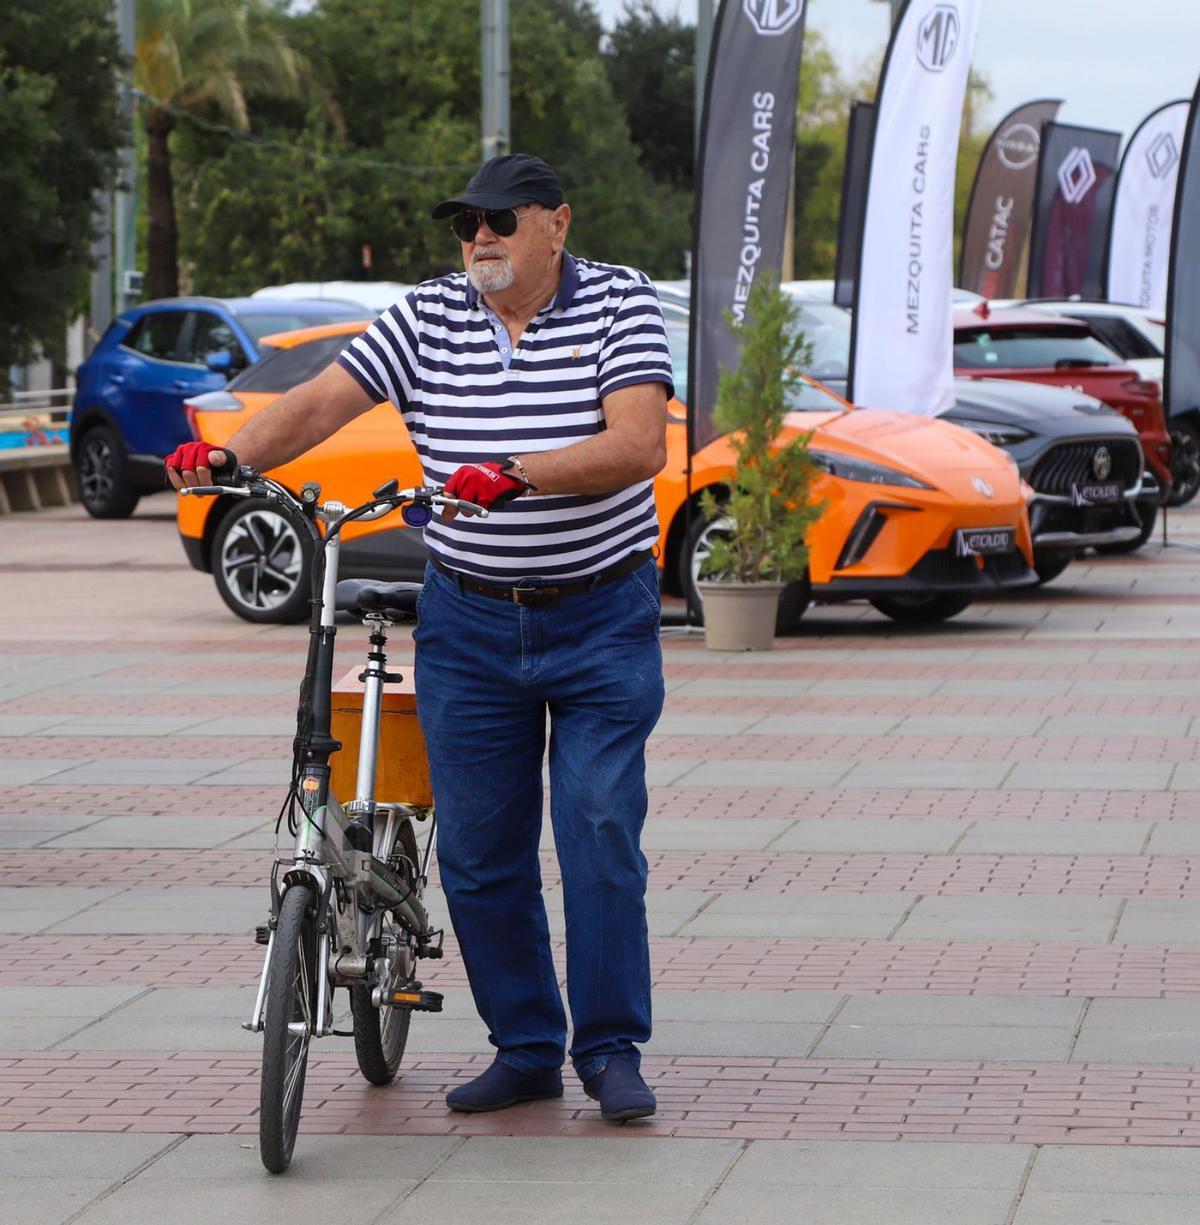 Un viandante con una bici en la reciente exposición de coches ECO e híbridos en el Paseo de Córdoba.